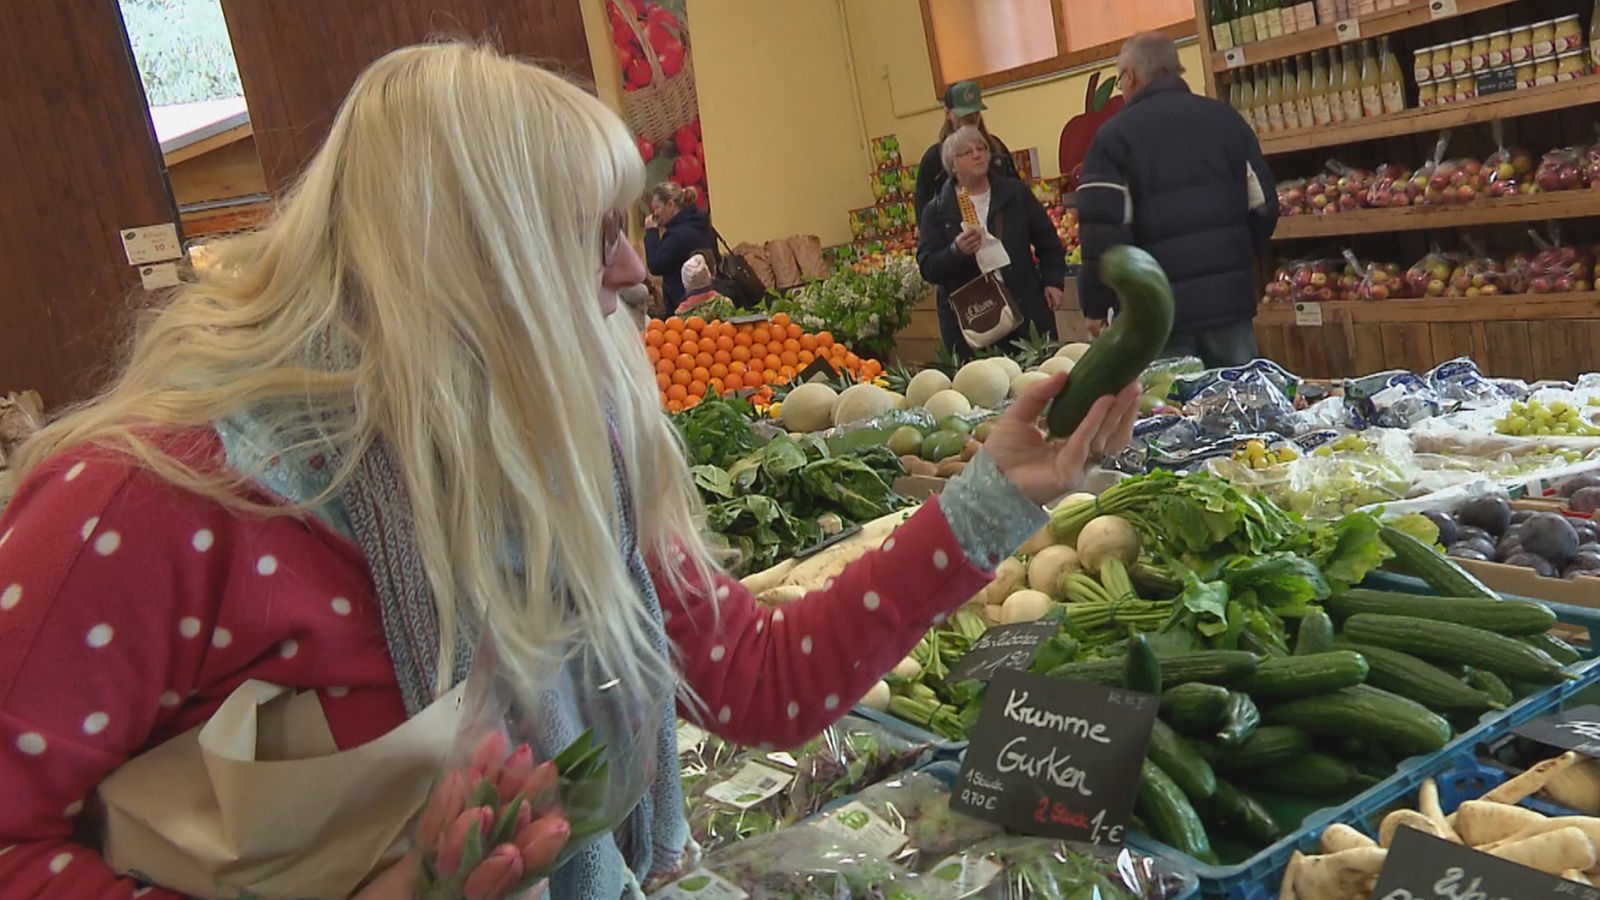 Eine Frau mit langen blonden Haaren steht in einem Geschäft und hat den Blick auf das Gemüsesortiment gerichtet. Sie hält eine krumme Gurke in der linken Hand.